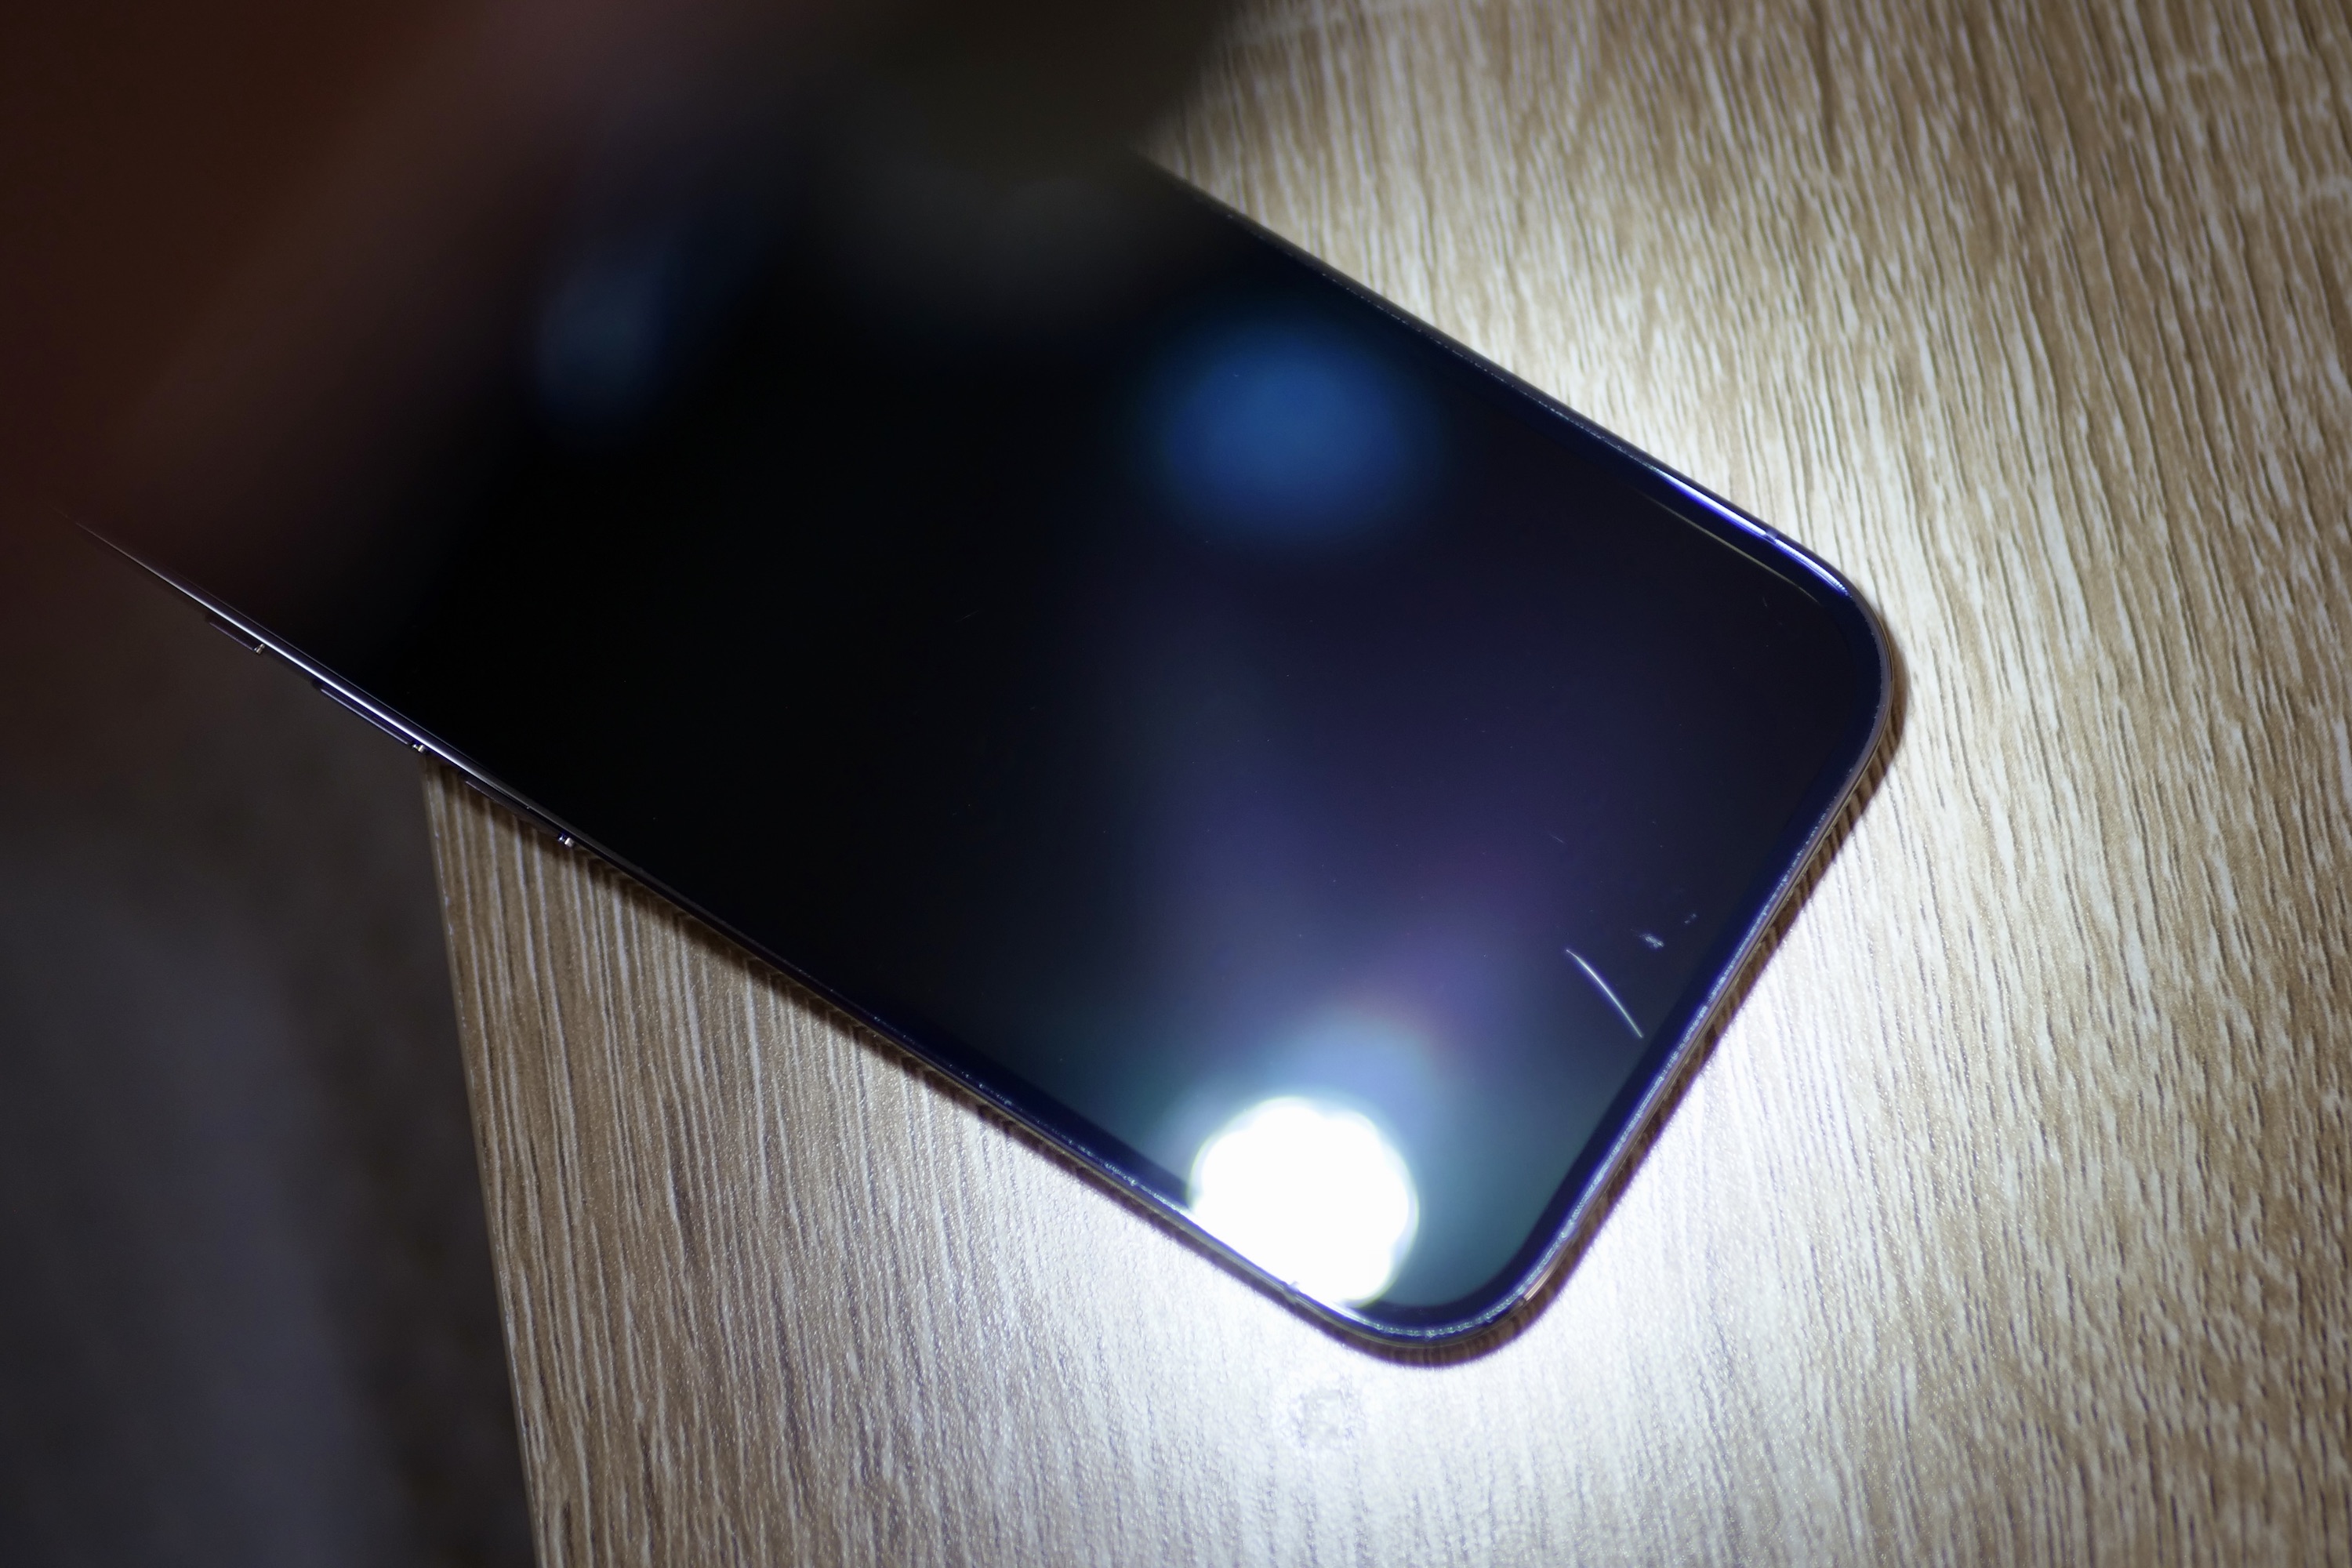 Keramikschild auf dem iPhone 14 Pro, mit Licht, um Kratzer sichtbar zu machen.